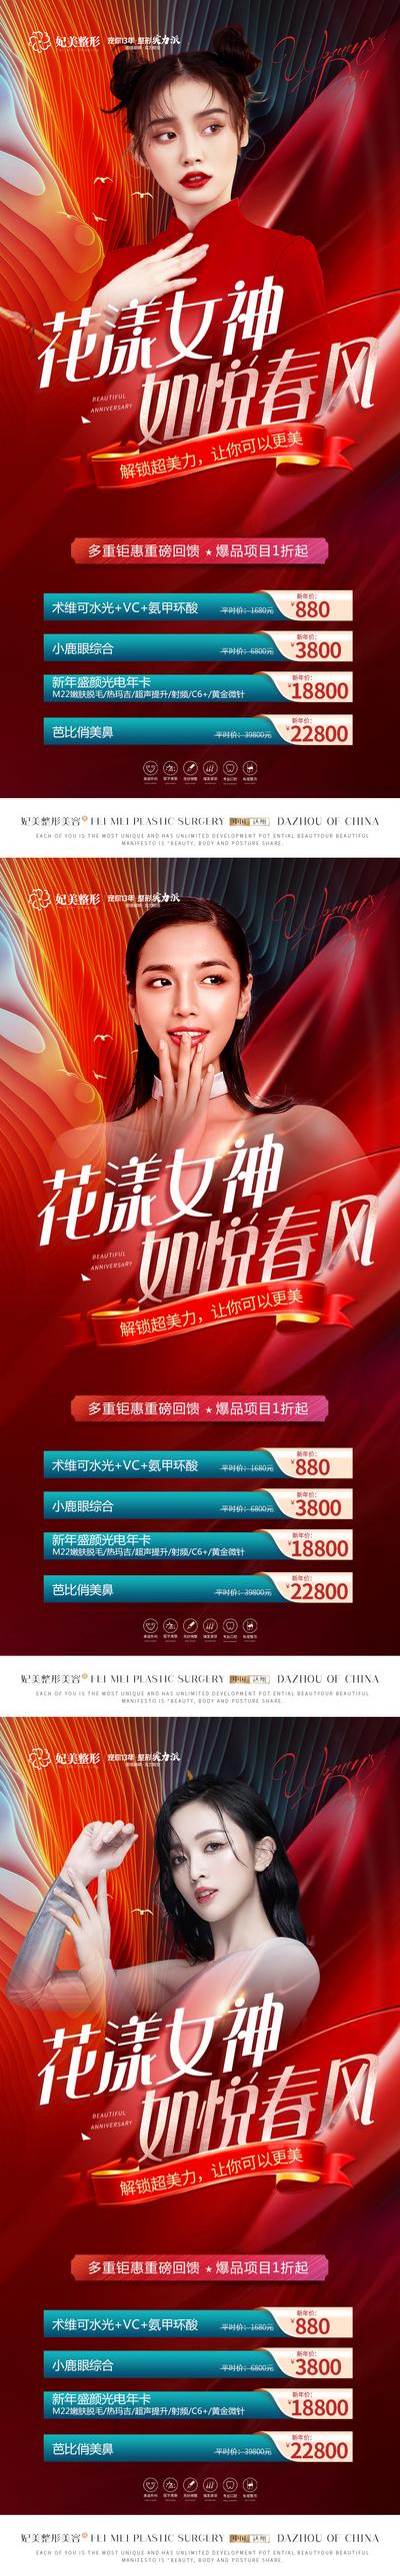 【南门网】海报 医美 整形 公历节日 38 妇女节 女神节 卡项 促销 人物 红色 质感